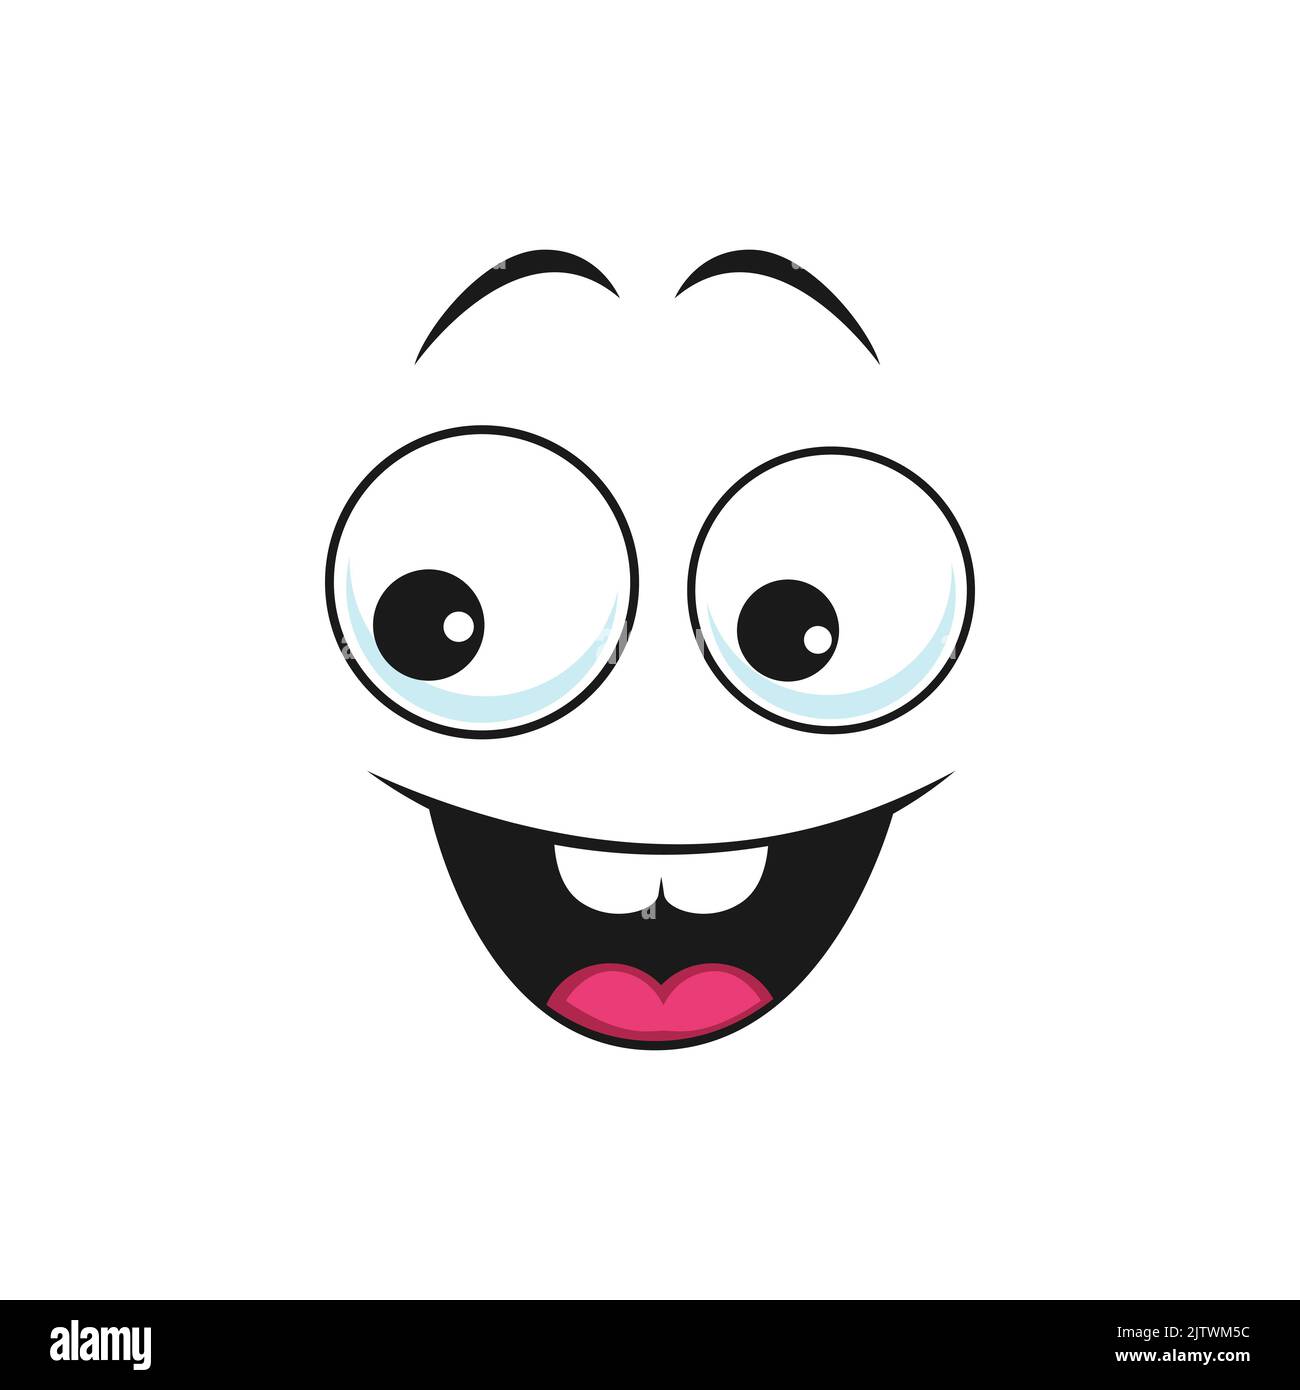 Faccia felice eccitata, emoji vettoriale del cartone animato con il sorriso largo, espressione facciale di felicità. Volto comico con bocca sorridente e toothy e occhi rotondi. Emozione divertente isolato su sfondo bianco Illustrazione Vettoriale